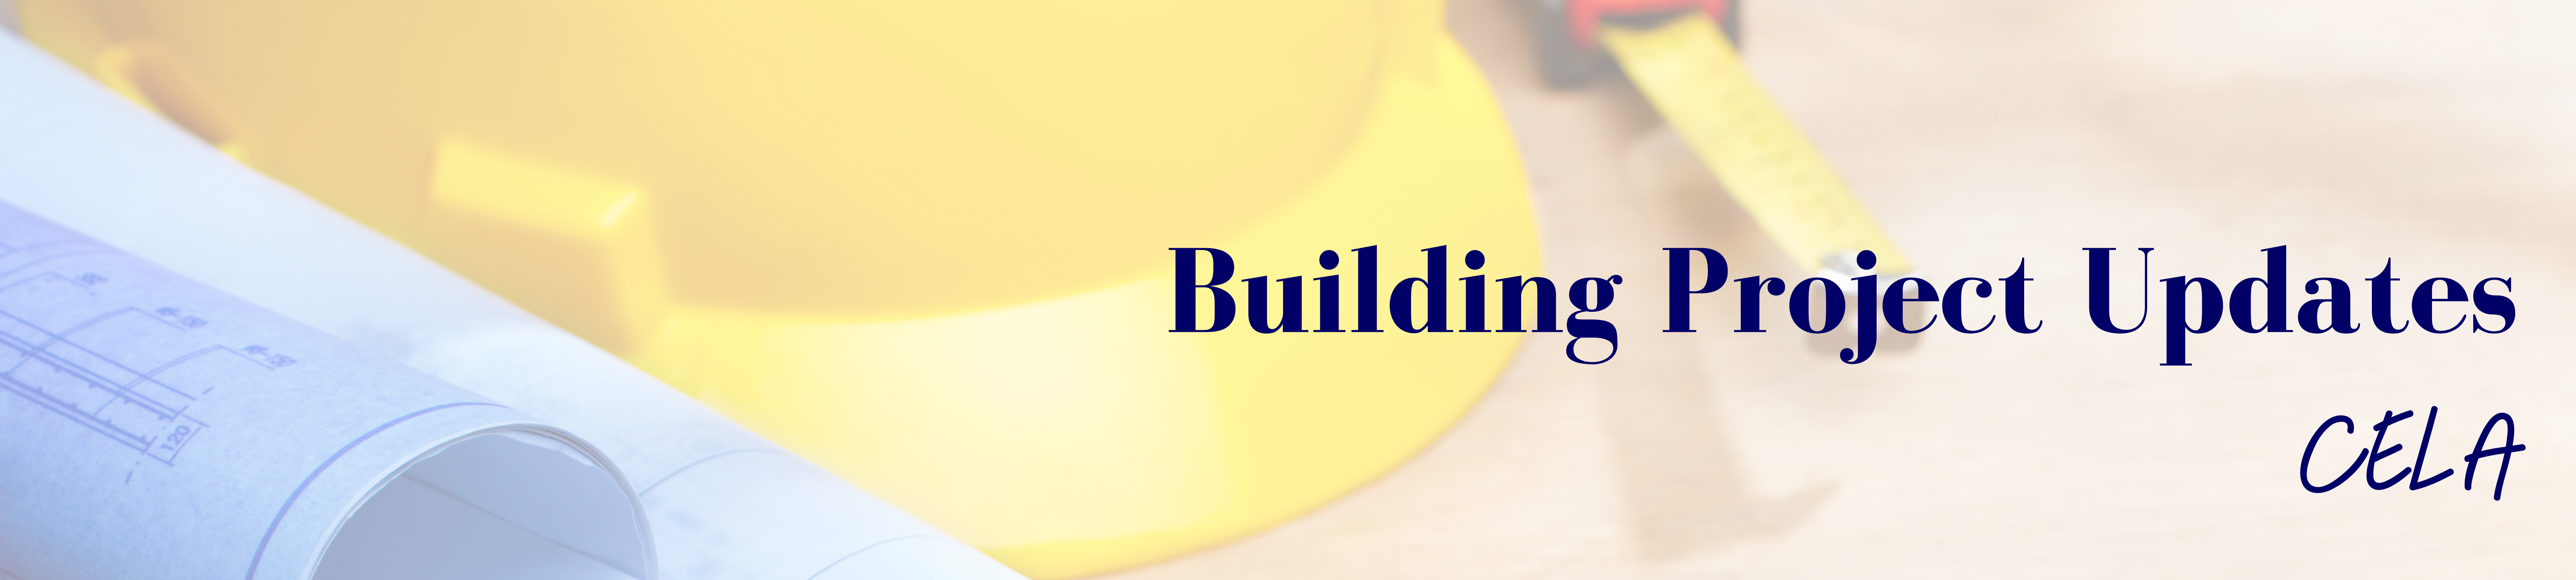 CELA building project updates